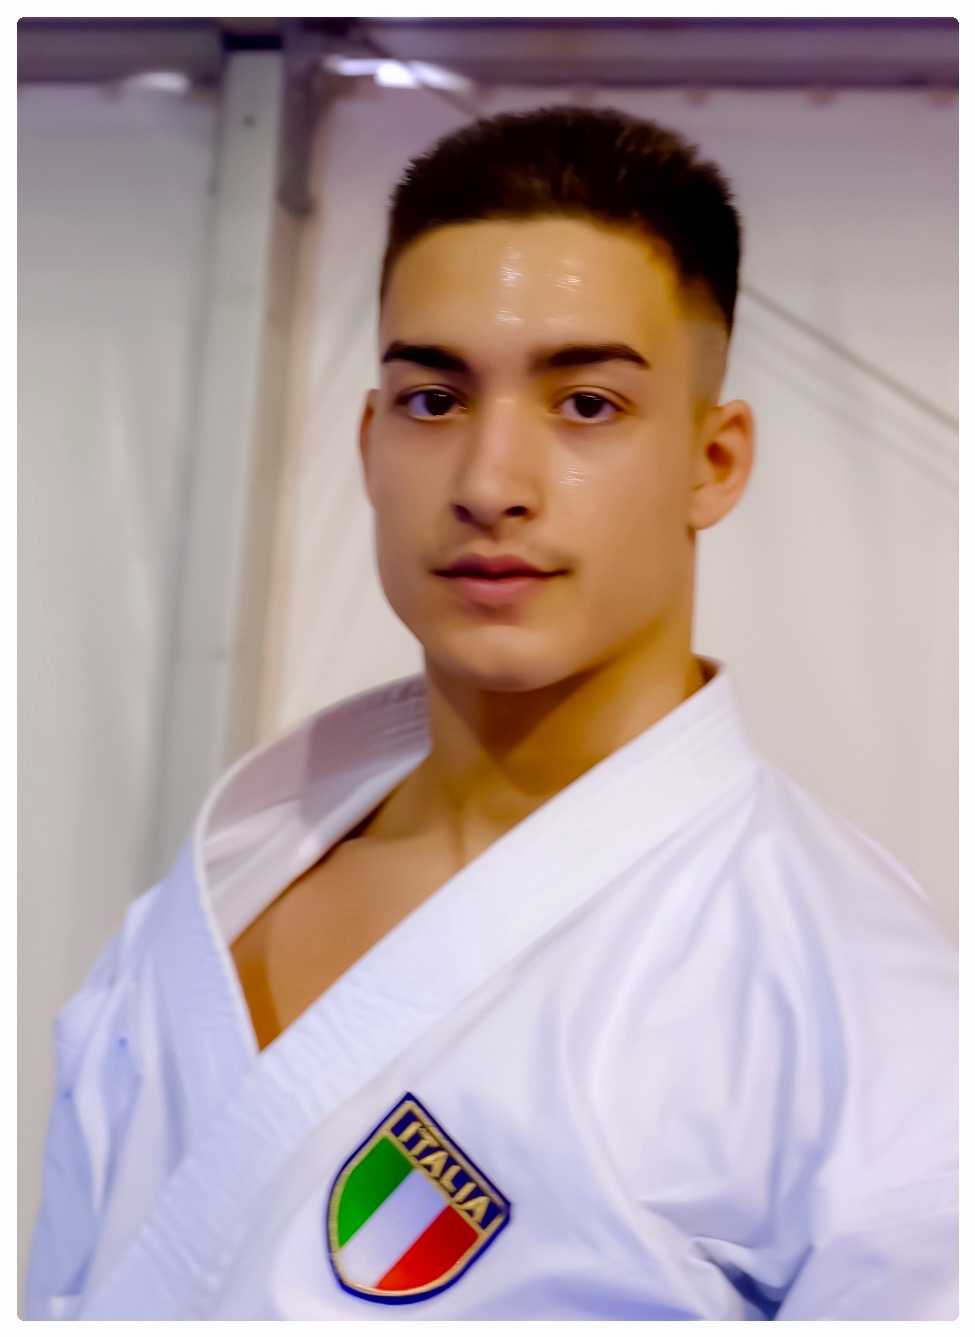 Barreca Mirko al suo 3° Campionato Europeo individuale specialità Kata categoria Under 21